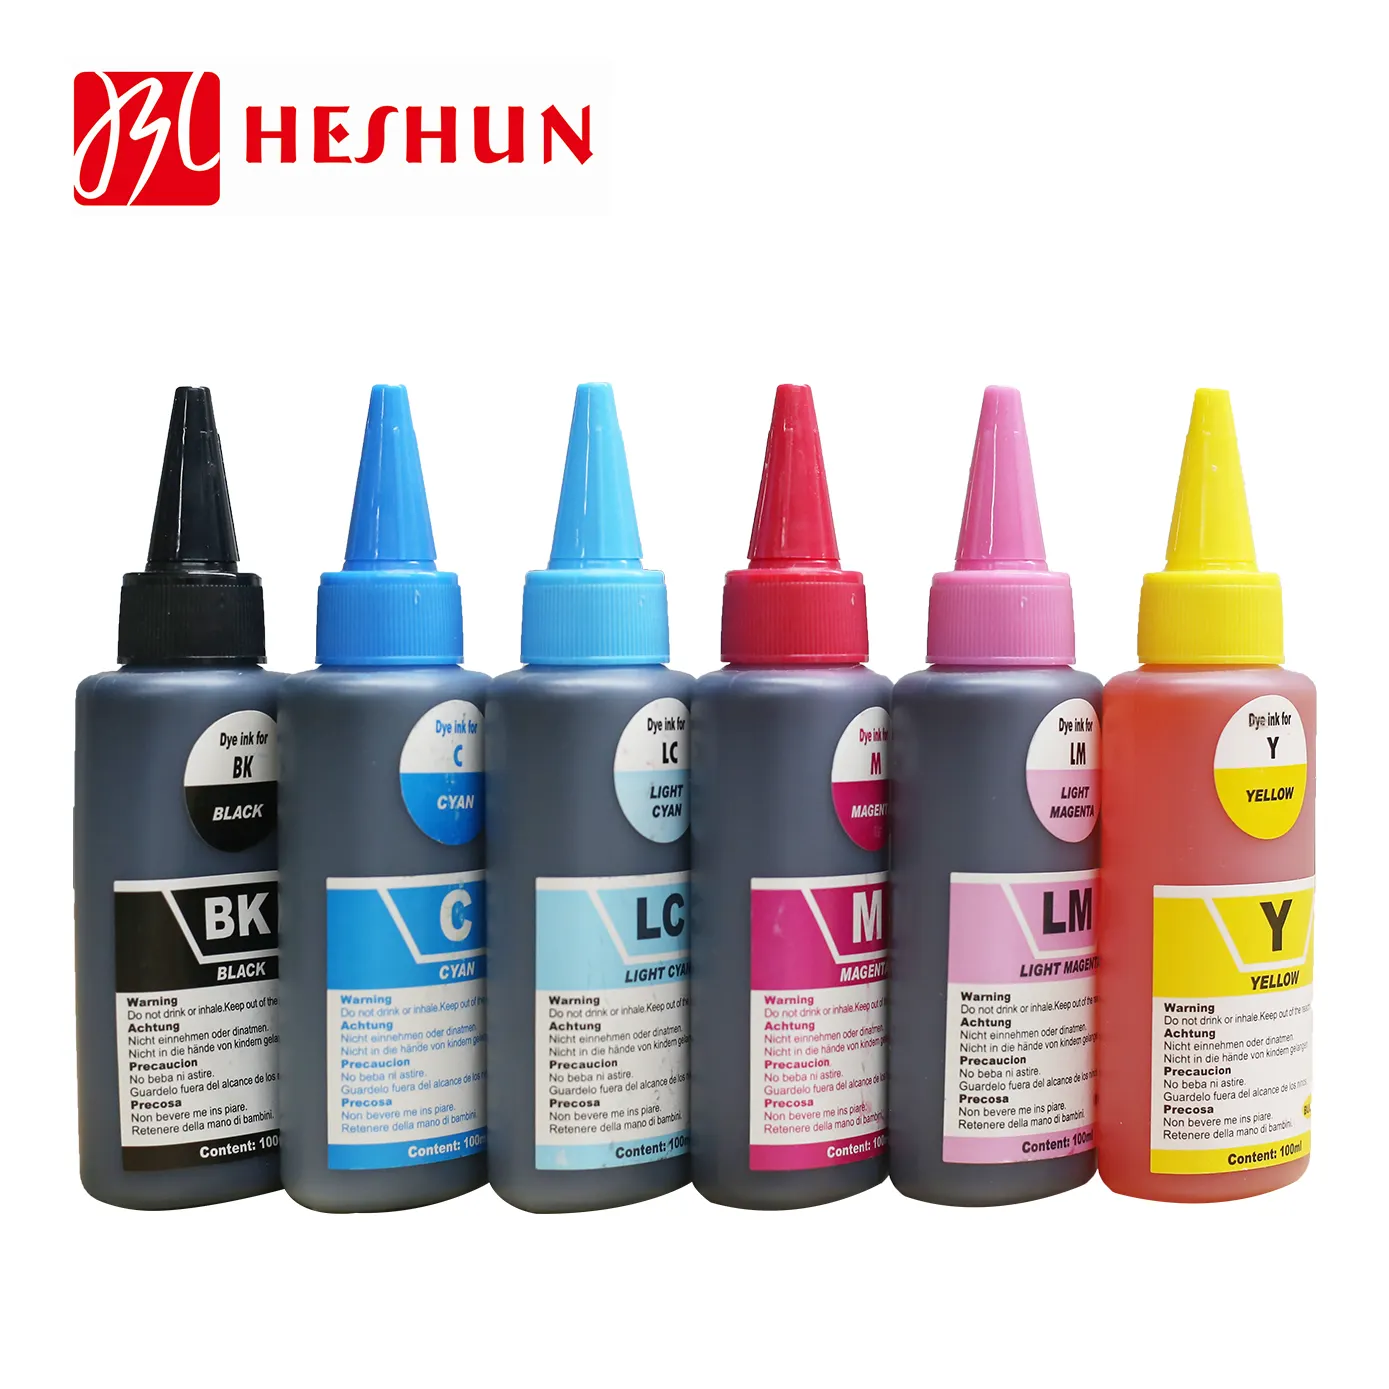 HESHUN-recarga de tinta universal para impresora tinta Ciss Compatible con 100ML, para HP, Canon, Brother, Epson